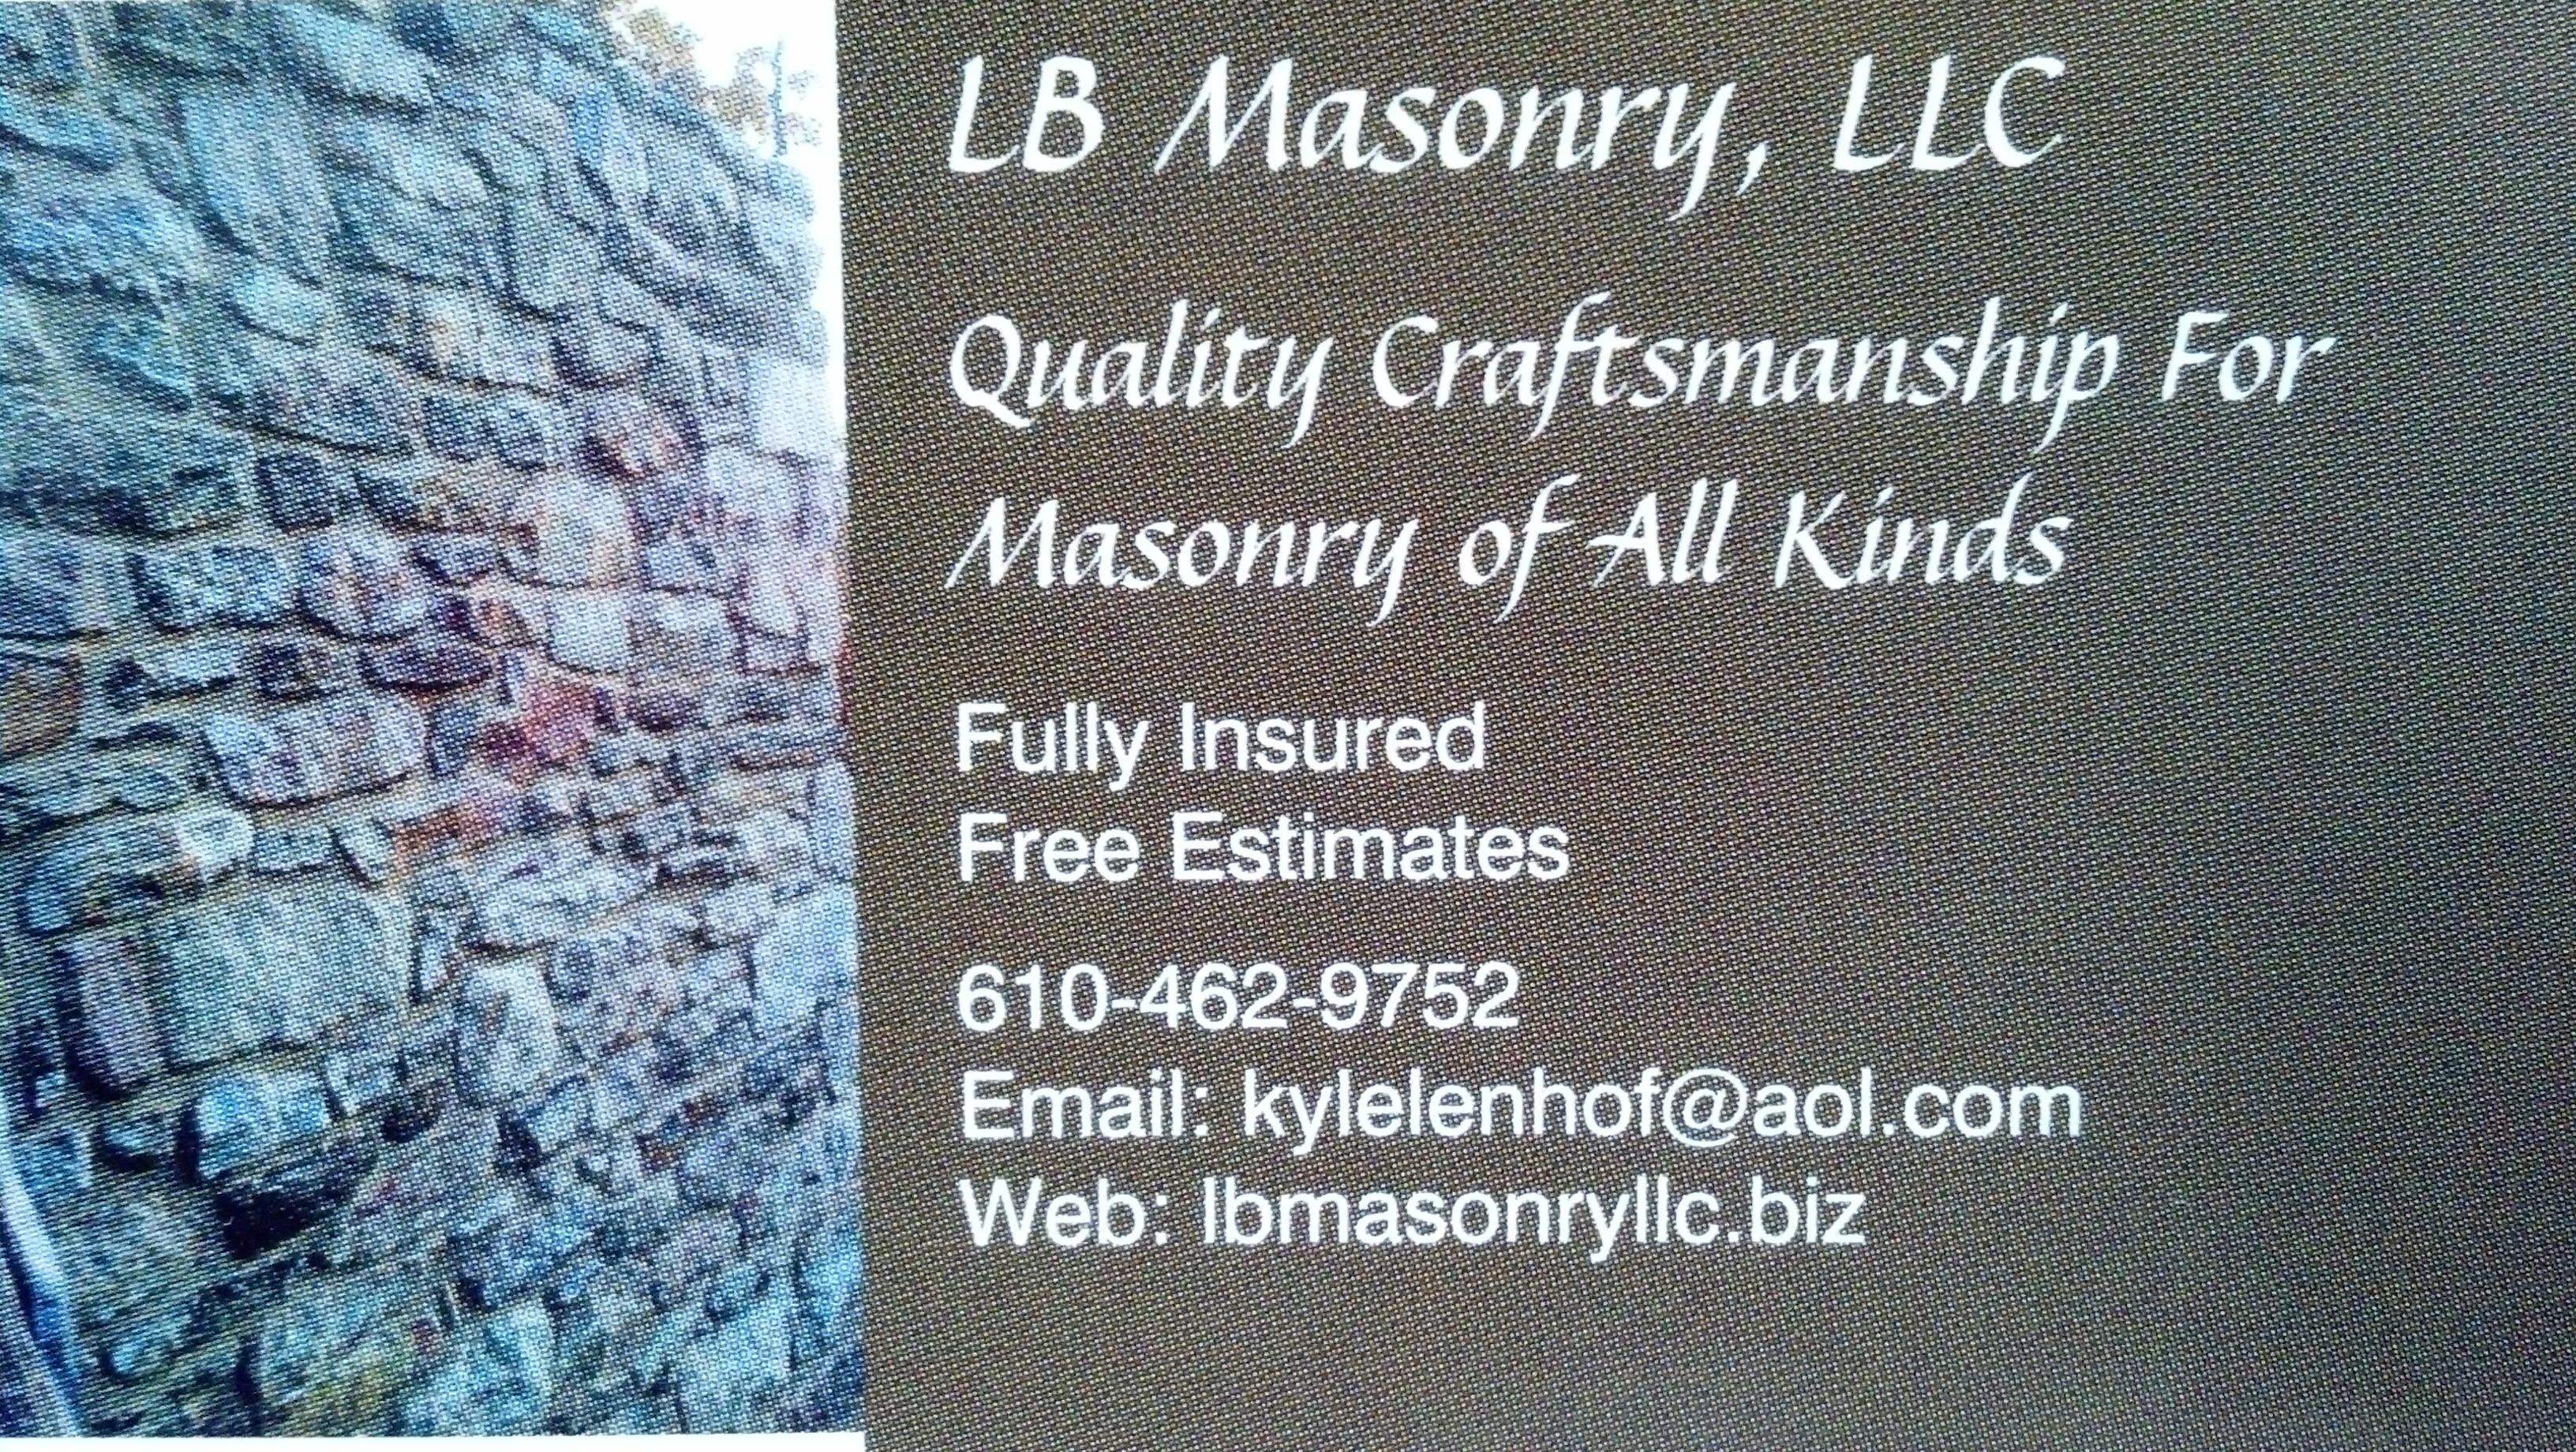 LB Masonry, LLC Logo